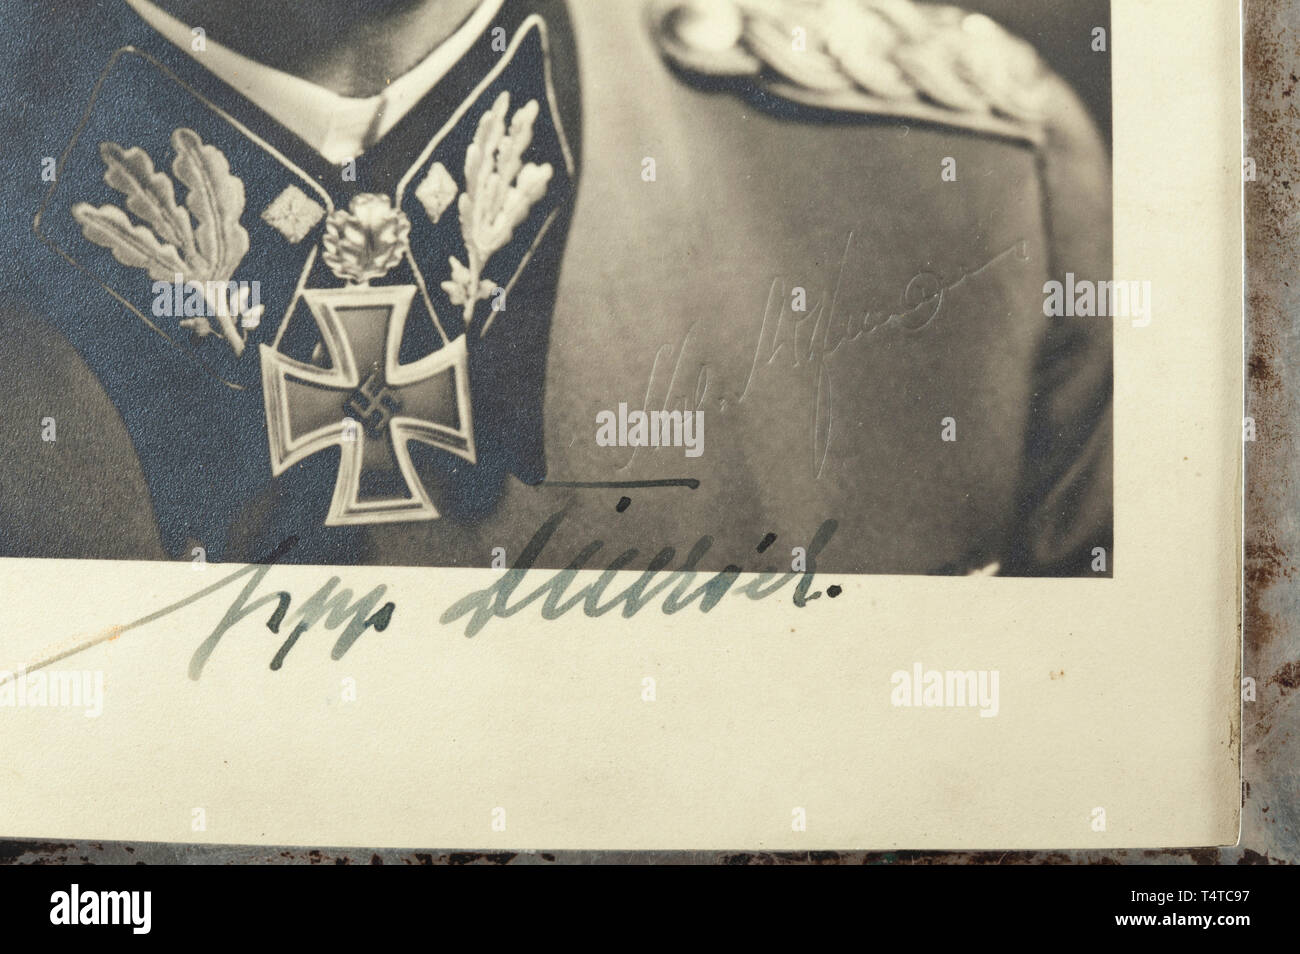 Sepp Dietrich (1892 - 1966) - chef de la Leibstandarte" - une photographie encadrée d'argent avec dévouement Portrait photographique d'une signature originale à l'encre, la photographie avec studio d'enregistrement. Dans un cadre permanent d'argent avec plusieurs marques. Dimensions du cadre 24 x 32 cm. Historique Historique, rare., 20e siècle, années 1930, années 1940, Waffen-SS, division de l'armée des SS, un service armé, forces armées, NS, le National-socialisme, le Nazisme, Troisième Reich, l'Empire allemand, l'Allemagne, militaire, militaria, ustensile, pièce de l'équipement, les ustensiles, objet, objets, alambics, clipping, coupures, découper, couper, Editorial-Use-seulement Banque D'Images